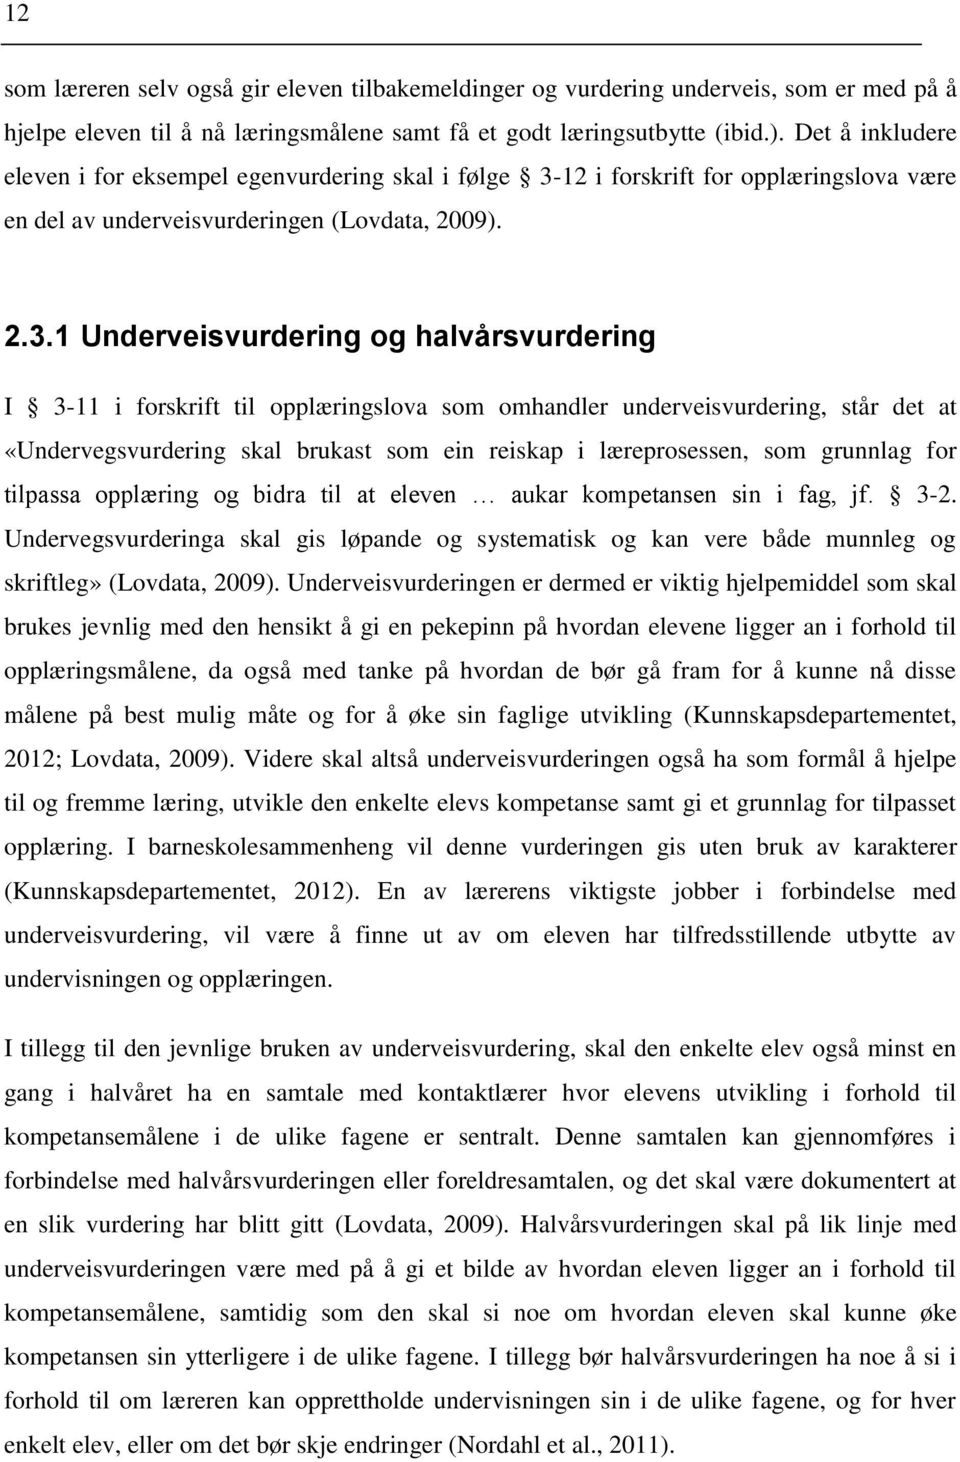 12 i forskrift for opplæringslova være en del av underveisvurderingen (Lovdata, 2009). 2.3.